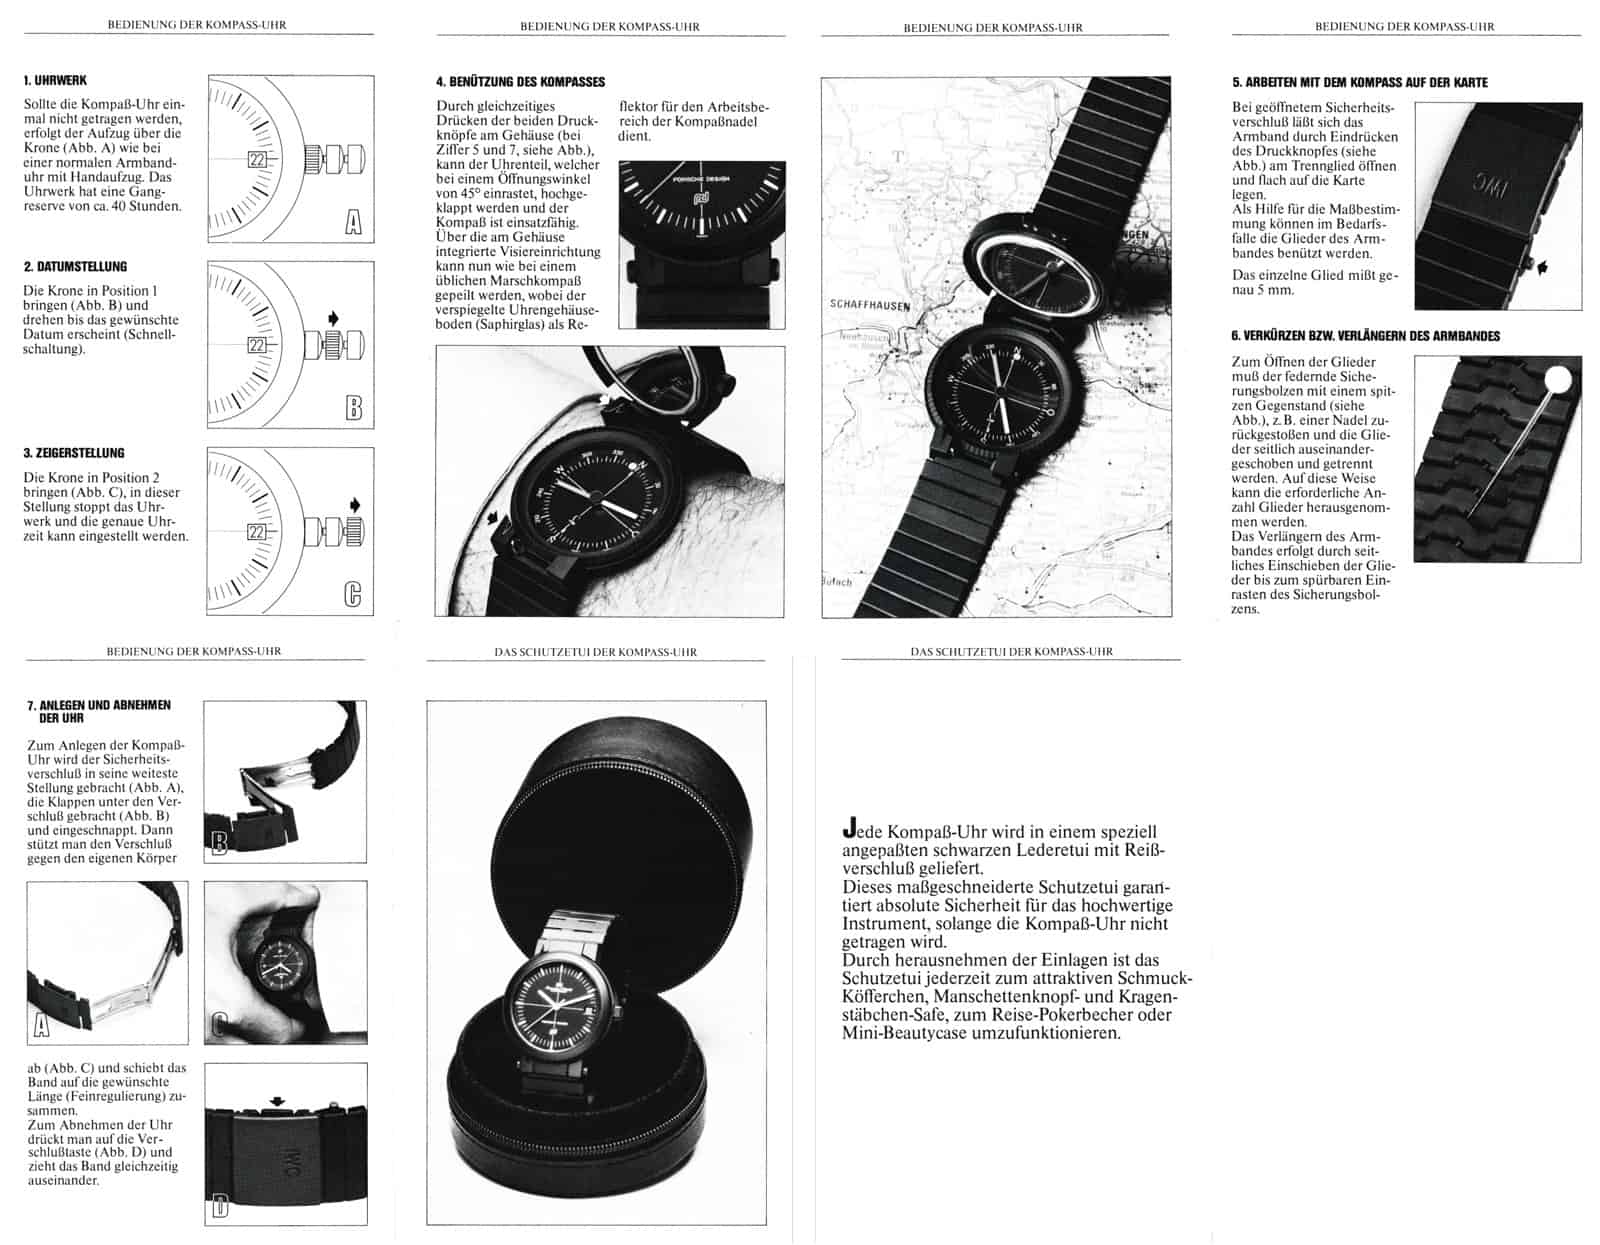 IWC Porsche Design Kompassuhr Flyer 1979 5-8 (C) Uhrenkosmos